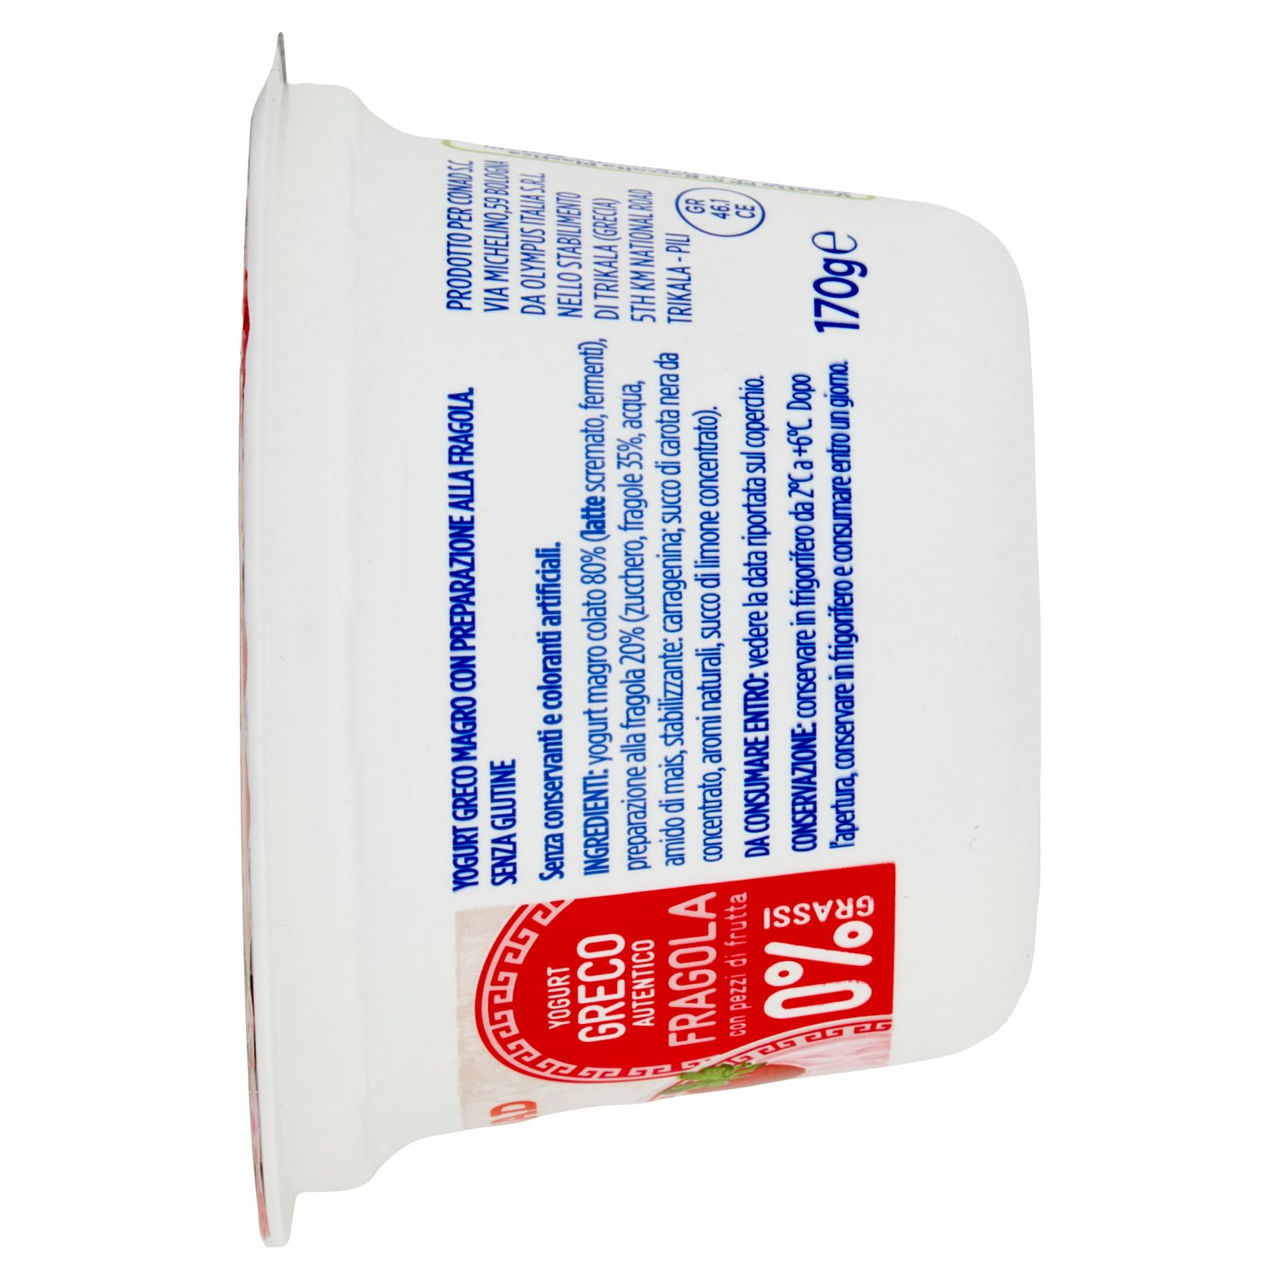 Yogurt Greco 0% Grassi Conad in vendita online